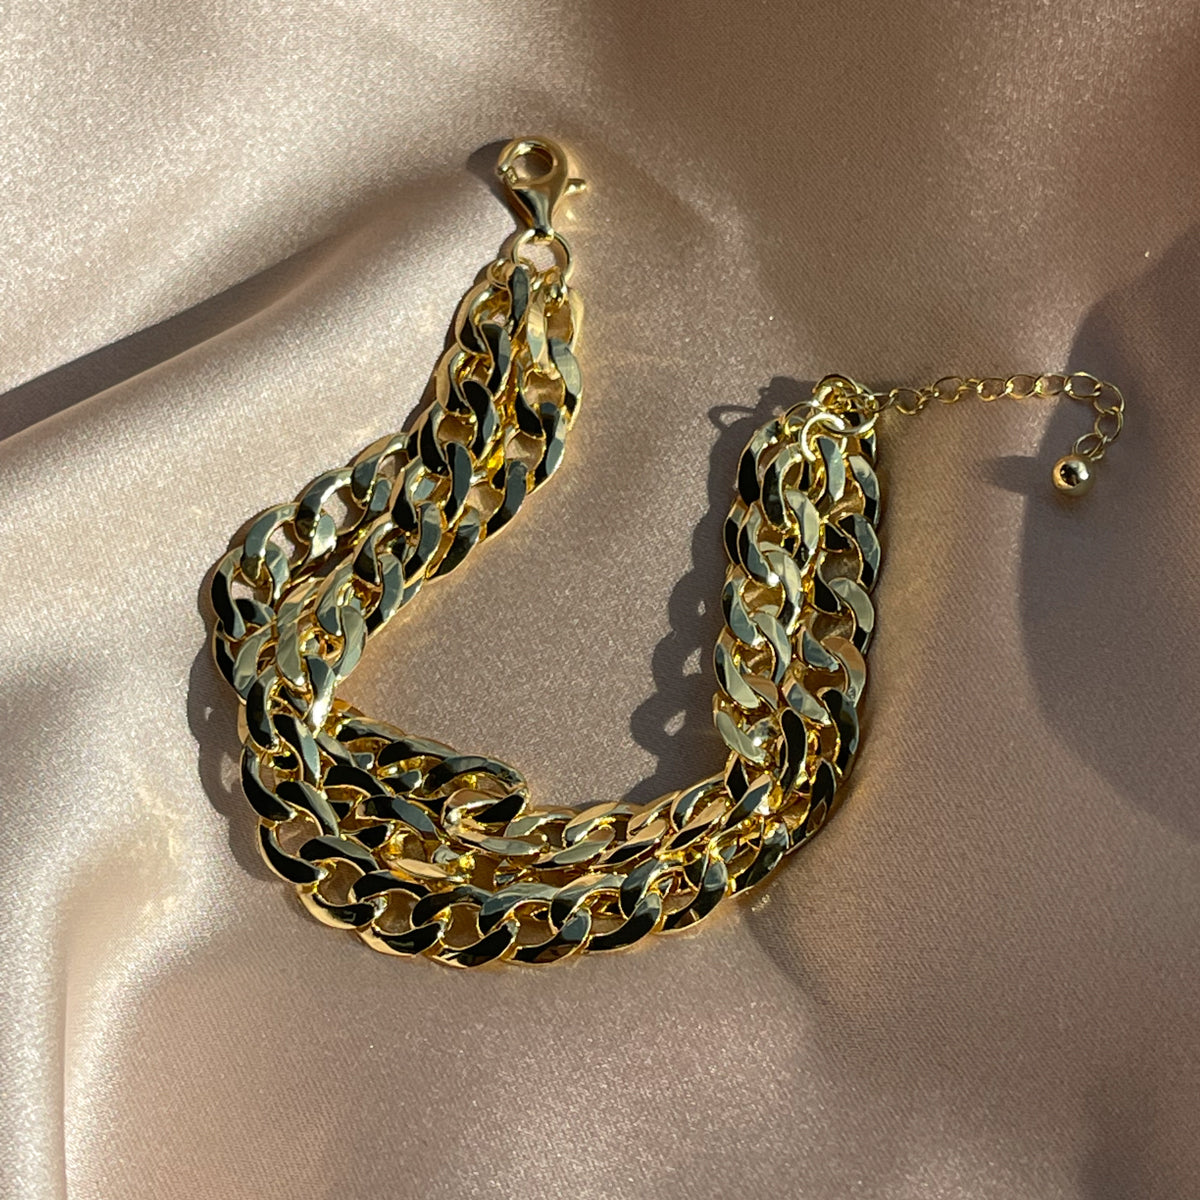 Name Bracelet in 18K Gold Vermeil